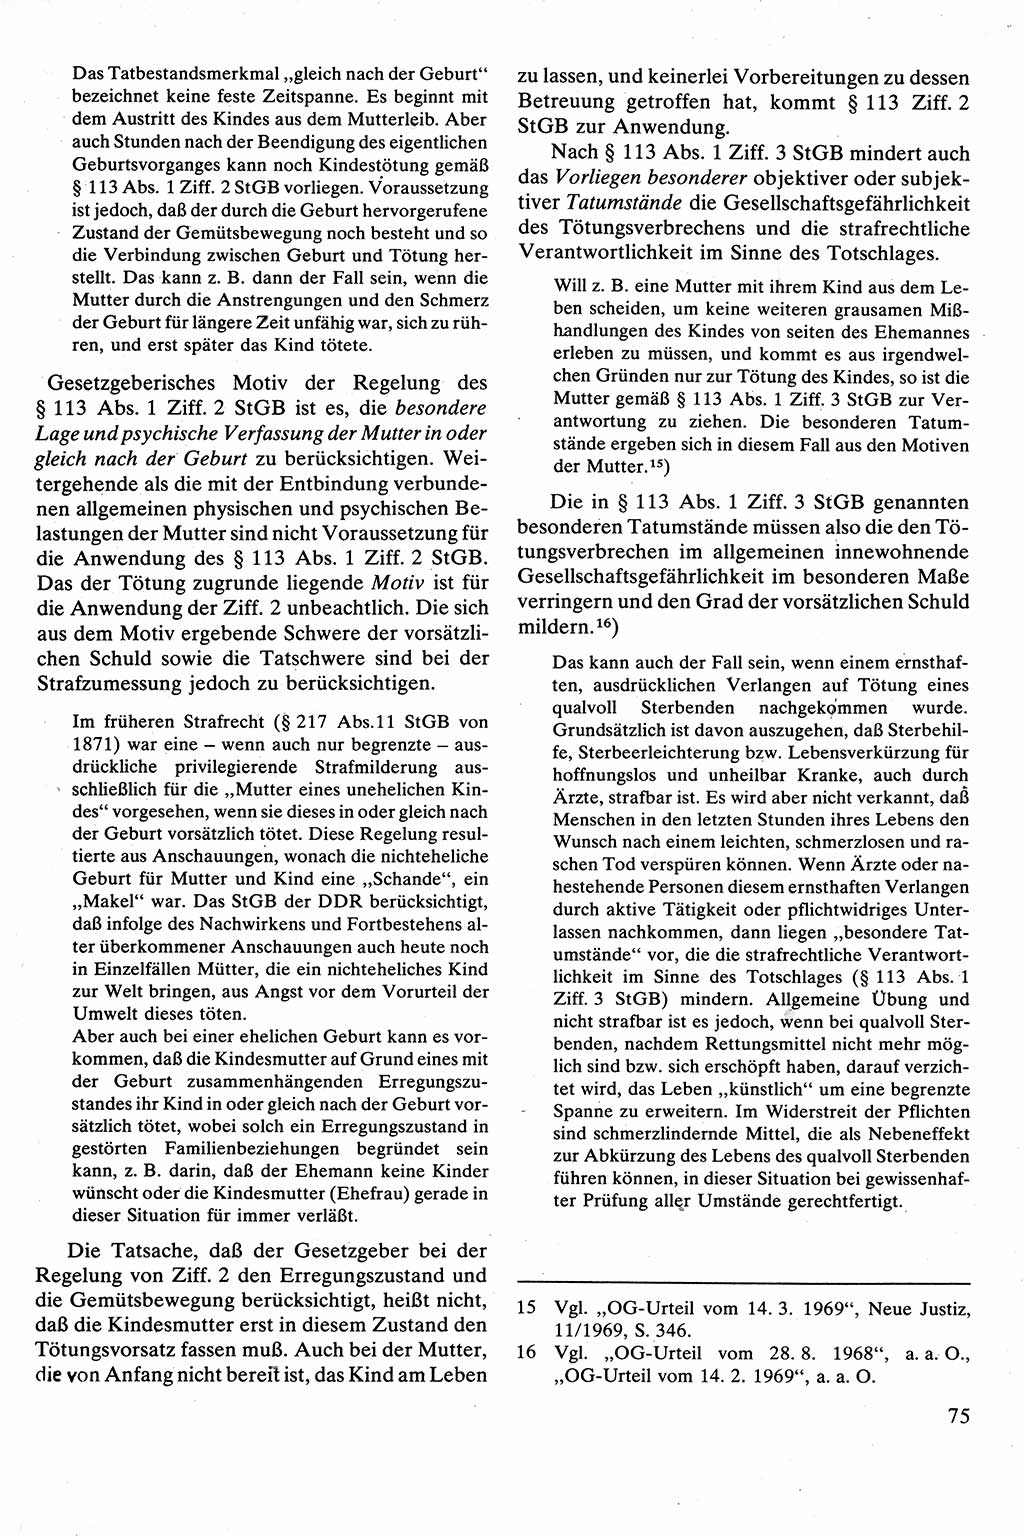 Strafrecht [Deutsche Demokratische Republik (DDR)], Besonderer Teil, Lehrbuch 1981, Seite 75 (Strafr. DDR BT Lb. 1981, S. 75)